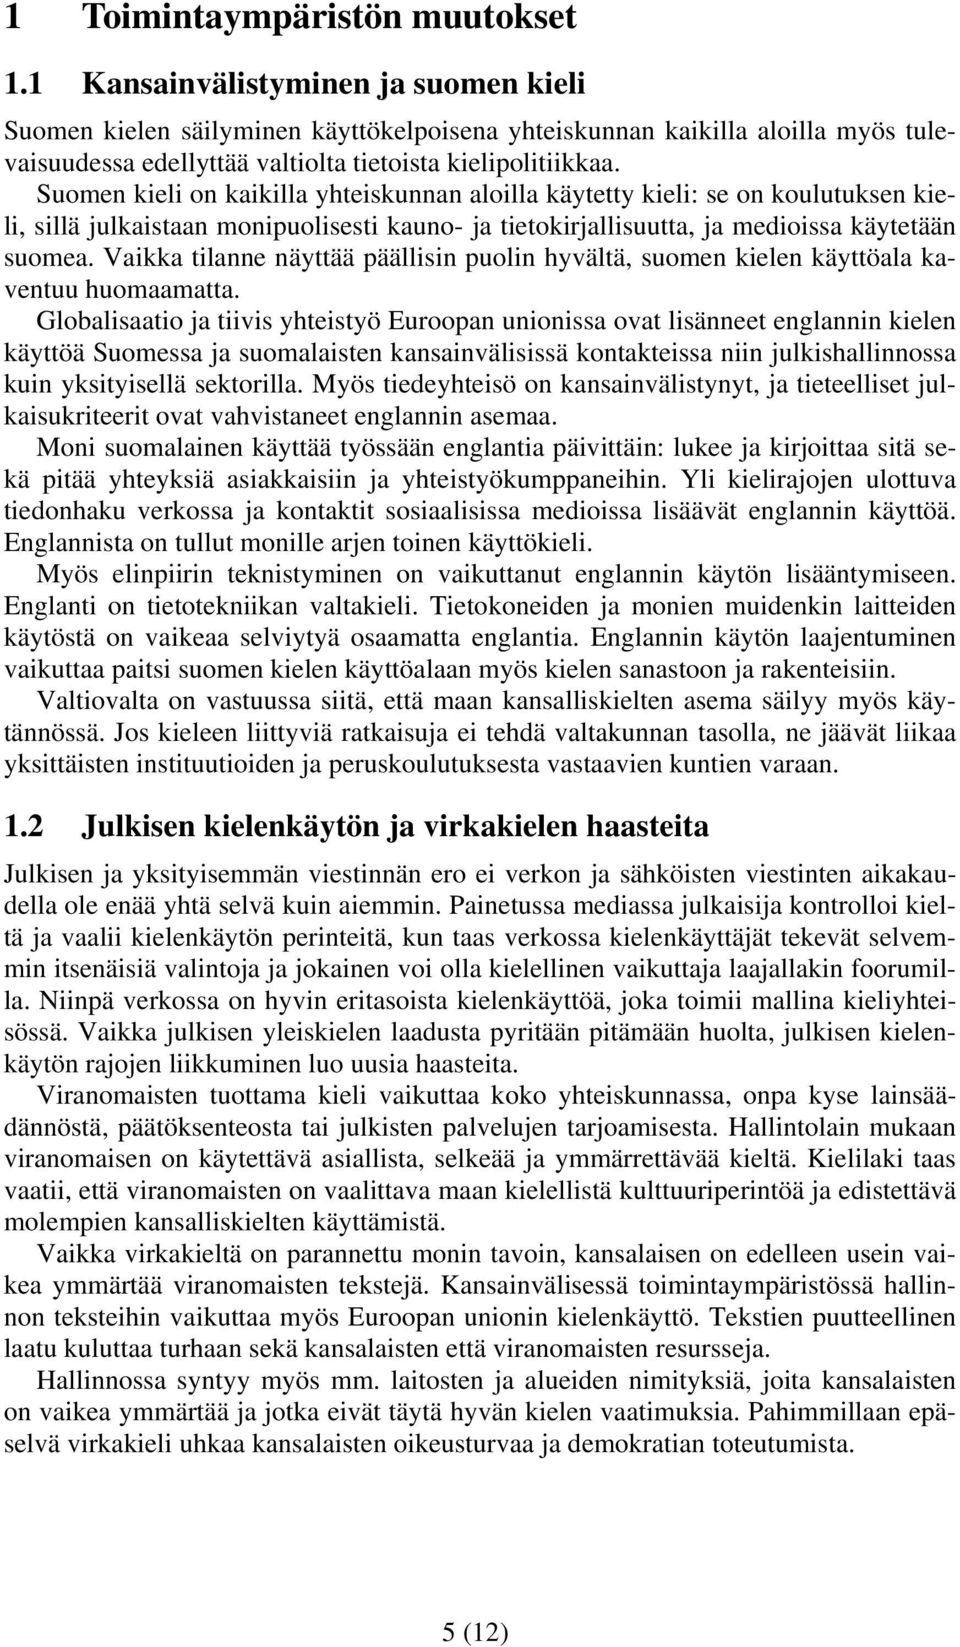 Suomen kieli on kaikilla yhteiskunnan aloilla käytetty kieli: se on koulutuksen kieli, sillä julkaistaan monipuolisesti kauno- ja tietokirjallisuutta, ja medioissa käytetään suomea.